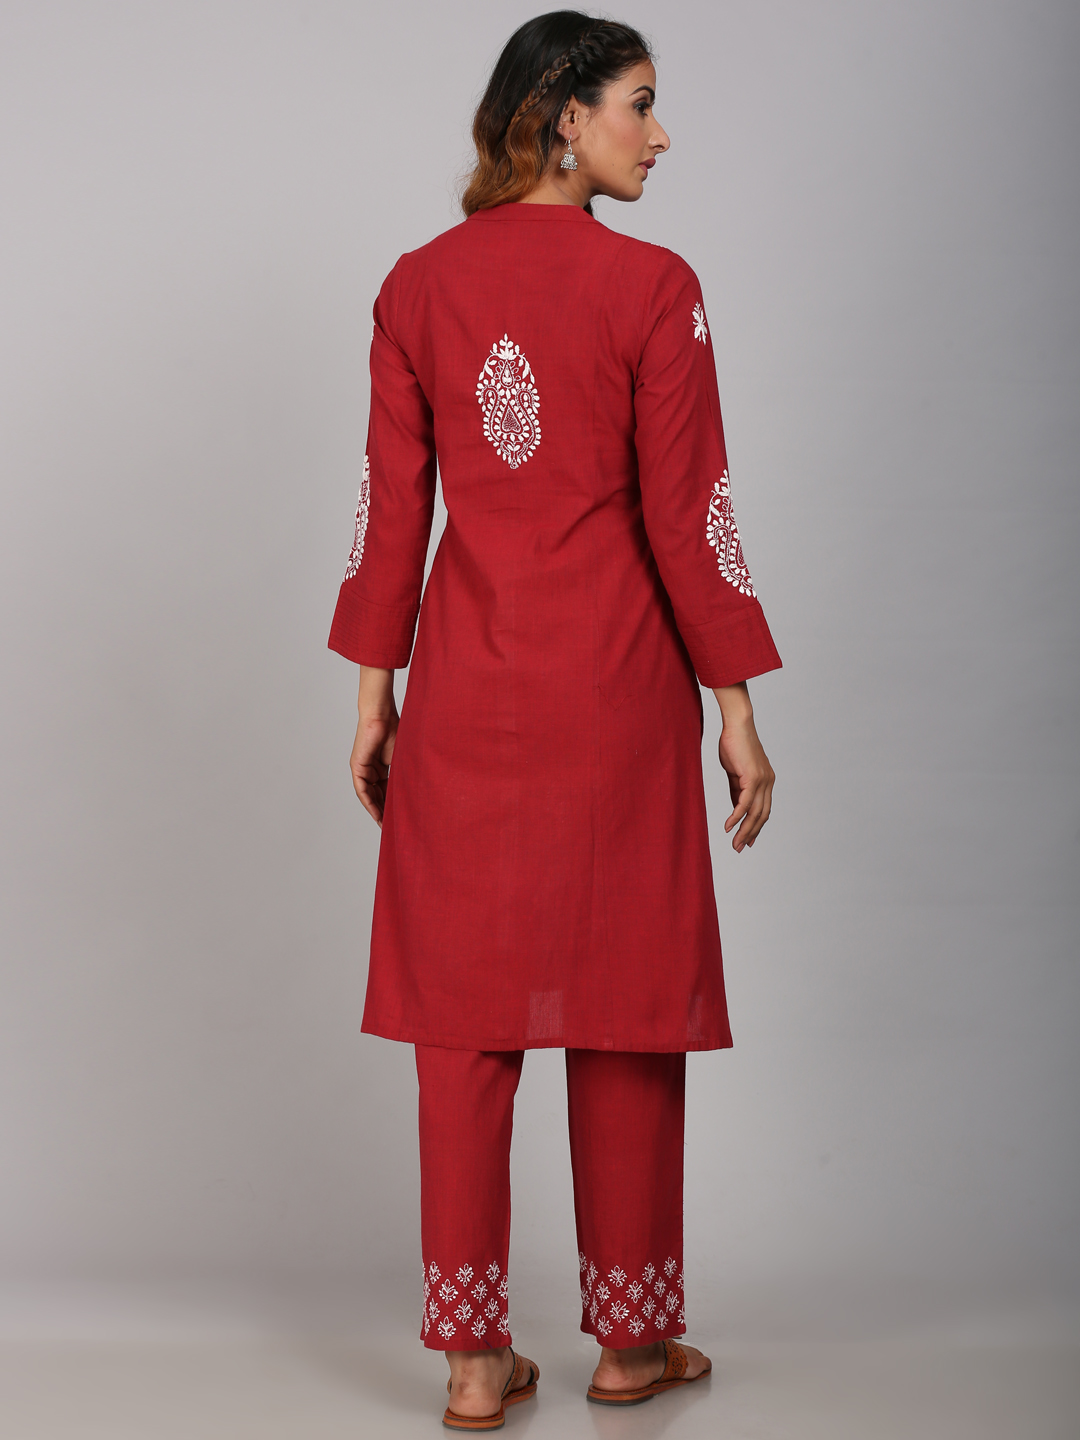 Lehriya Suit Stitched at Rs 899/pair | Yamuna Nagar | ID: 22298220212